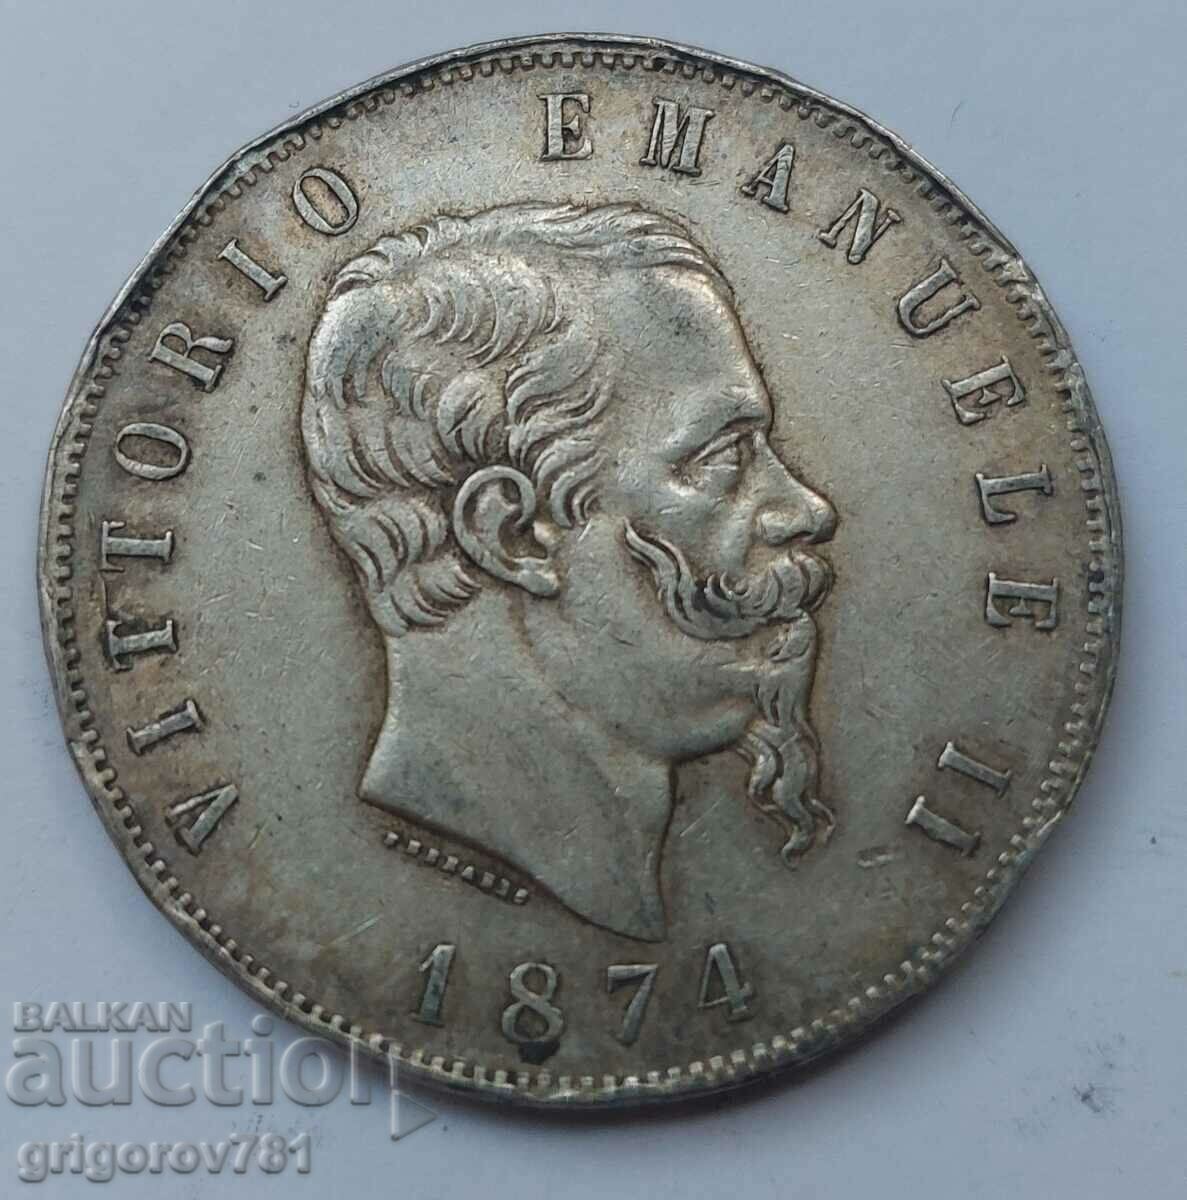 Ασημένιο 5 λίρες Ιταλία 1874 - Ασημένιο νόμισμα #240